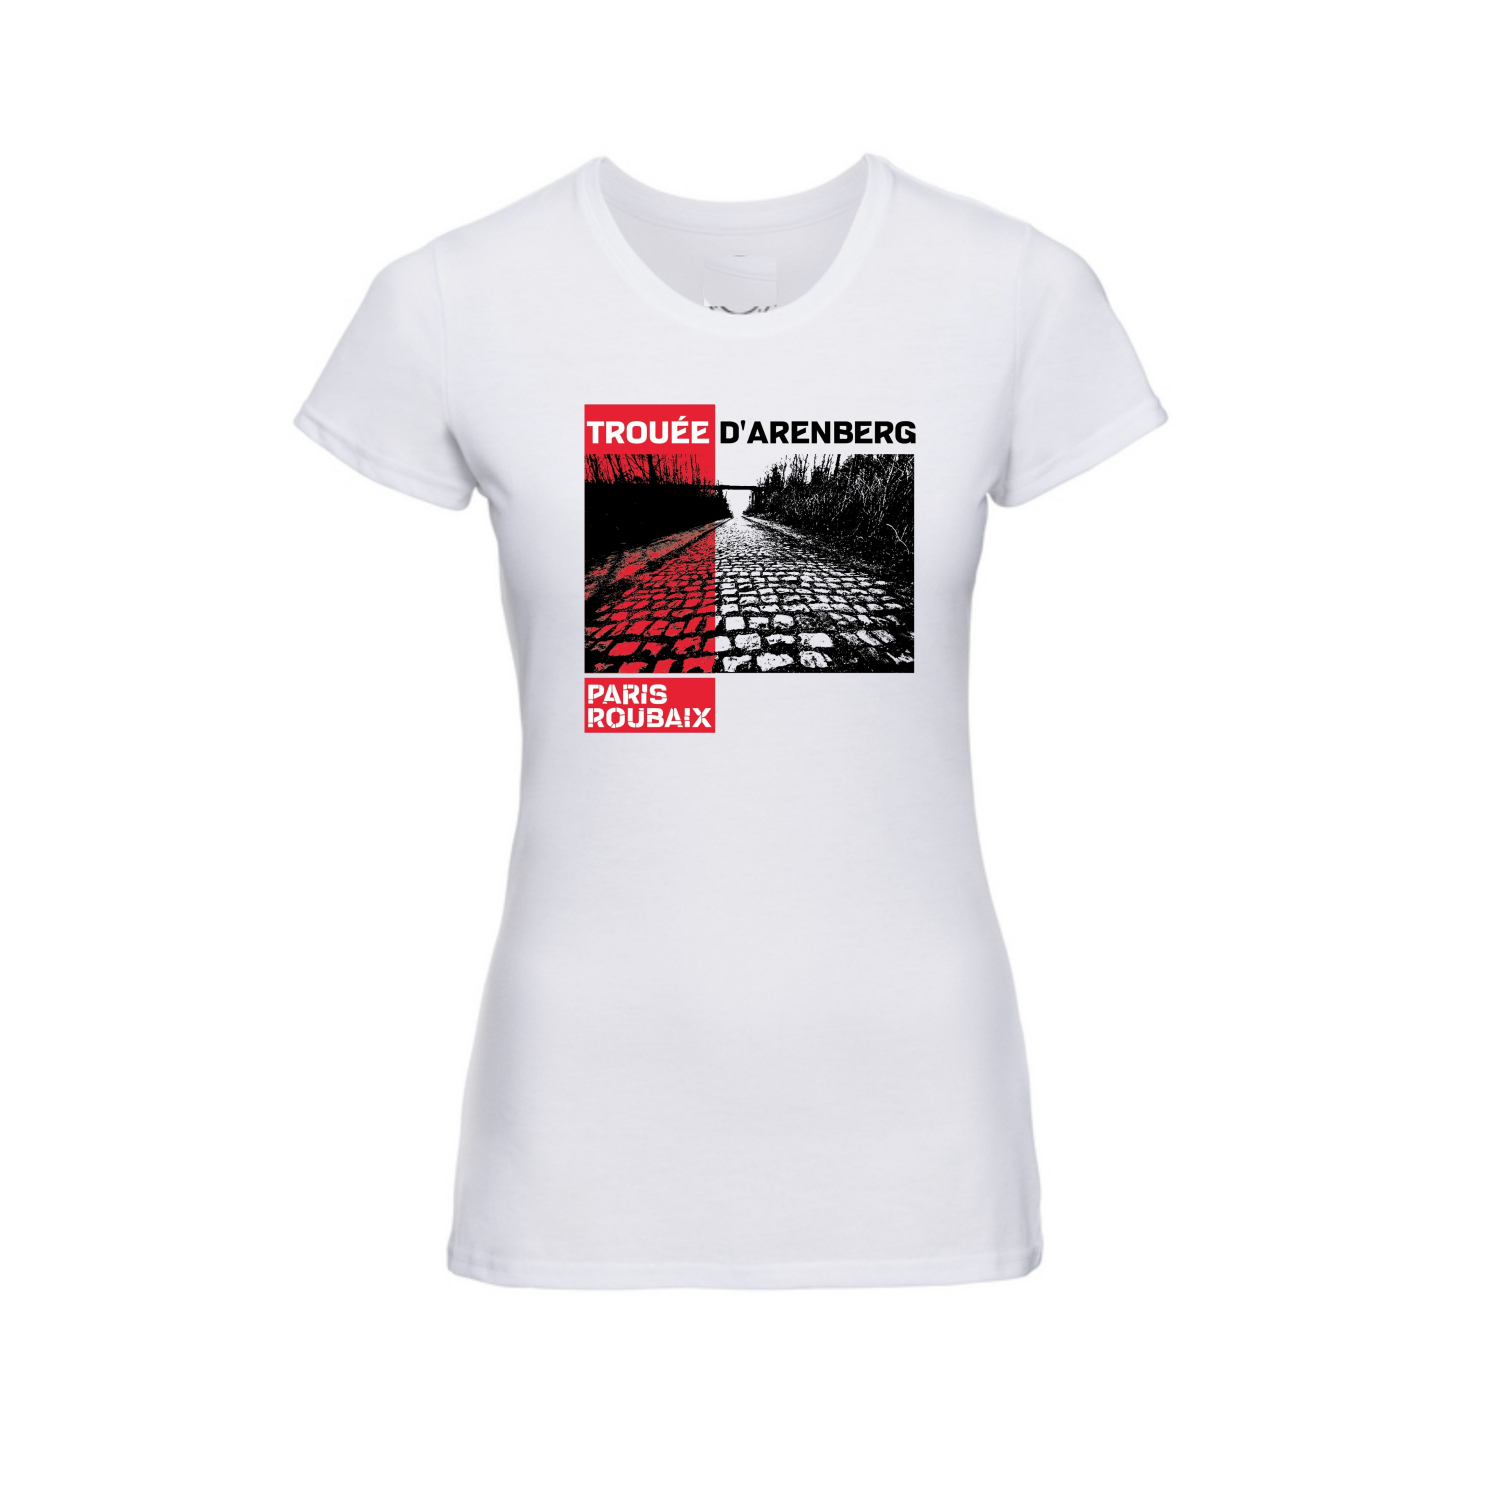 T-shirt Paris Roubaix "Trouée" Femme